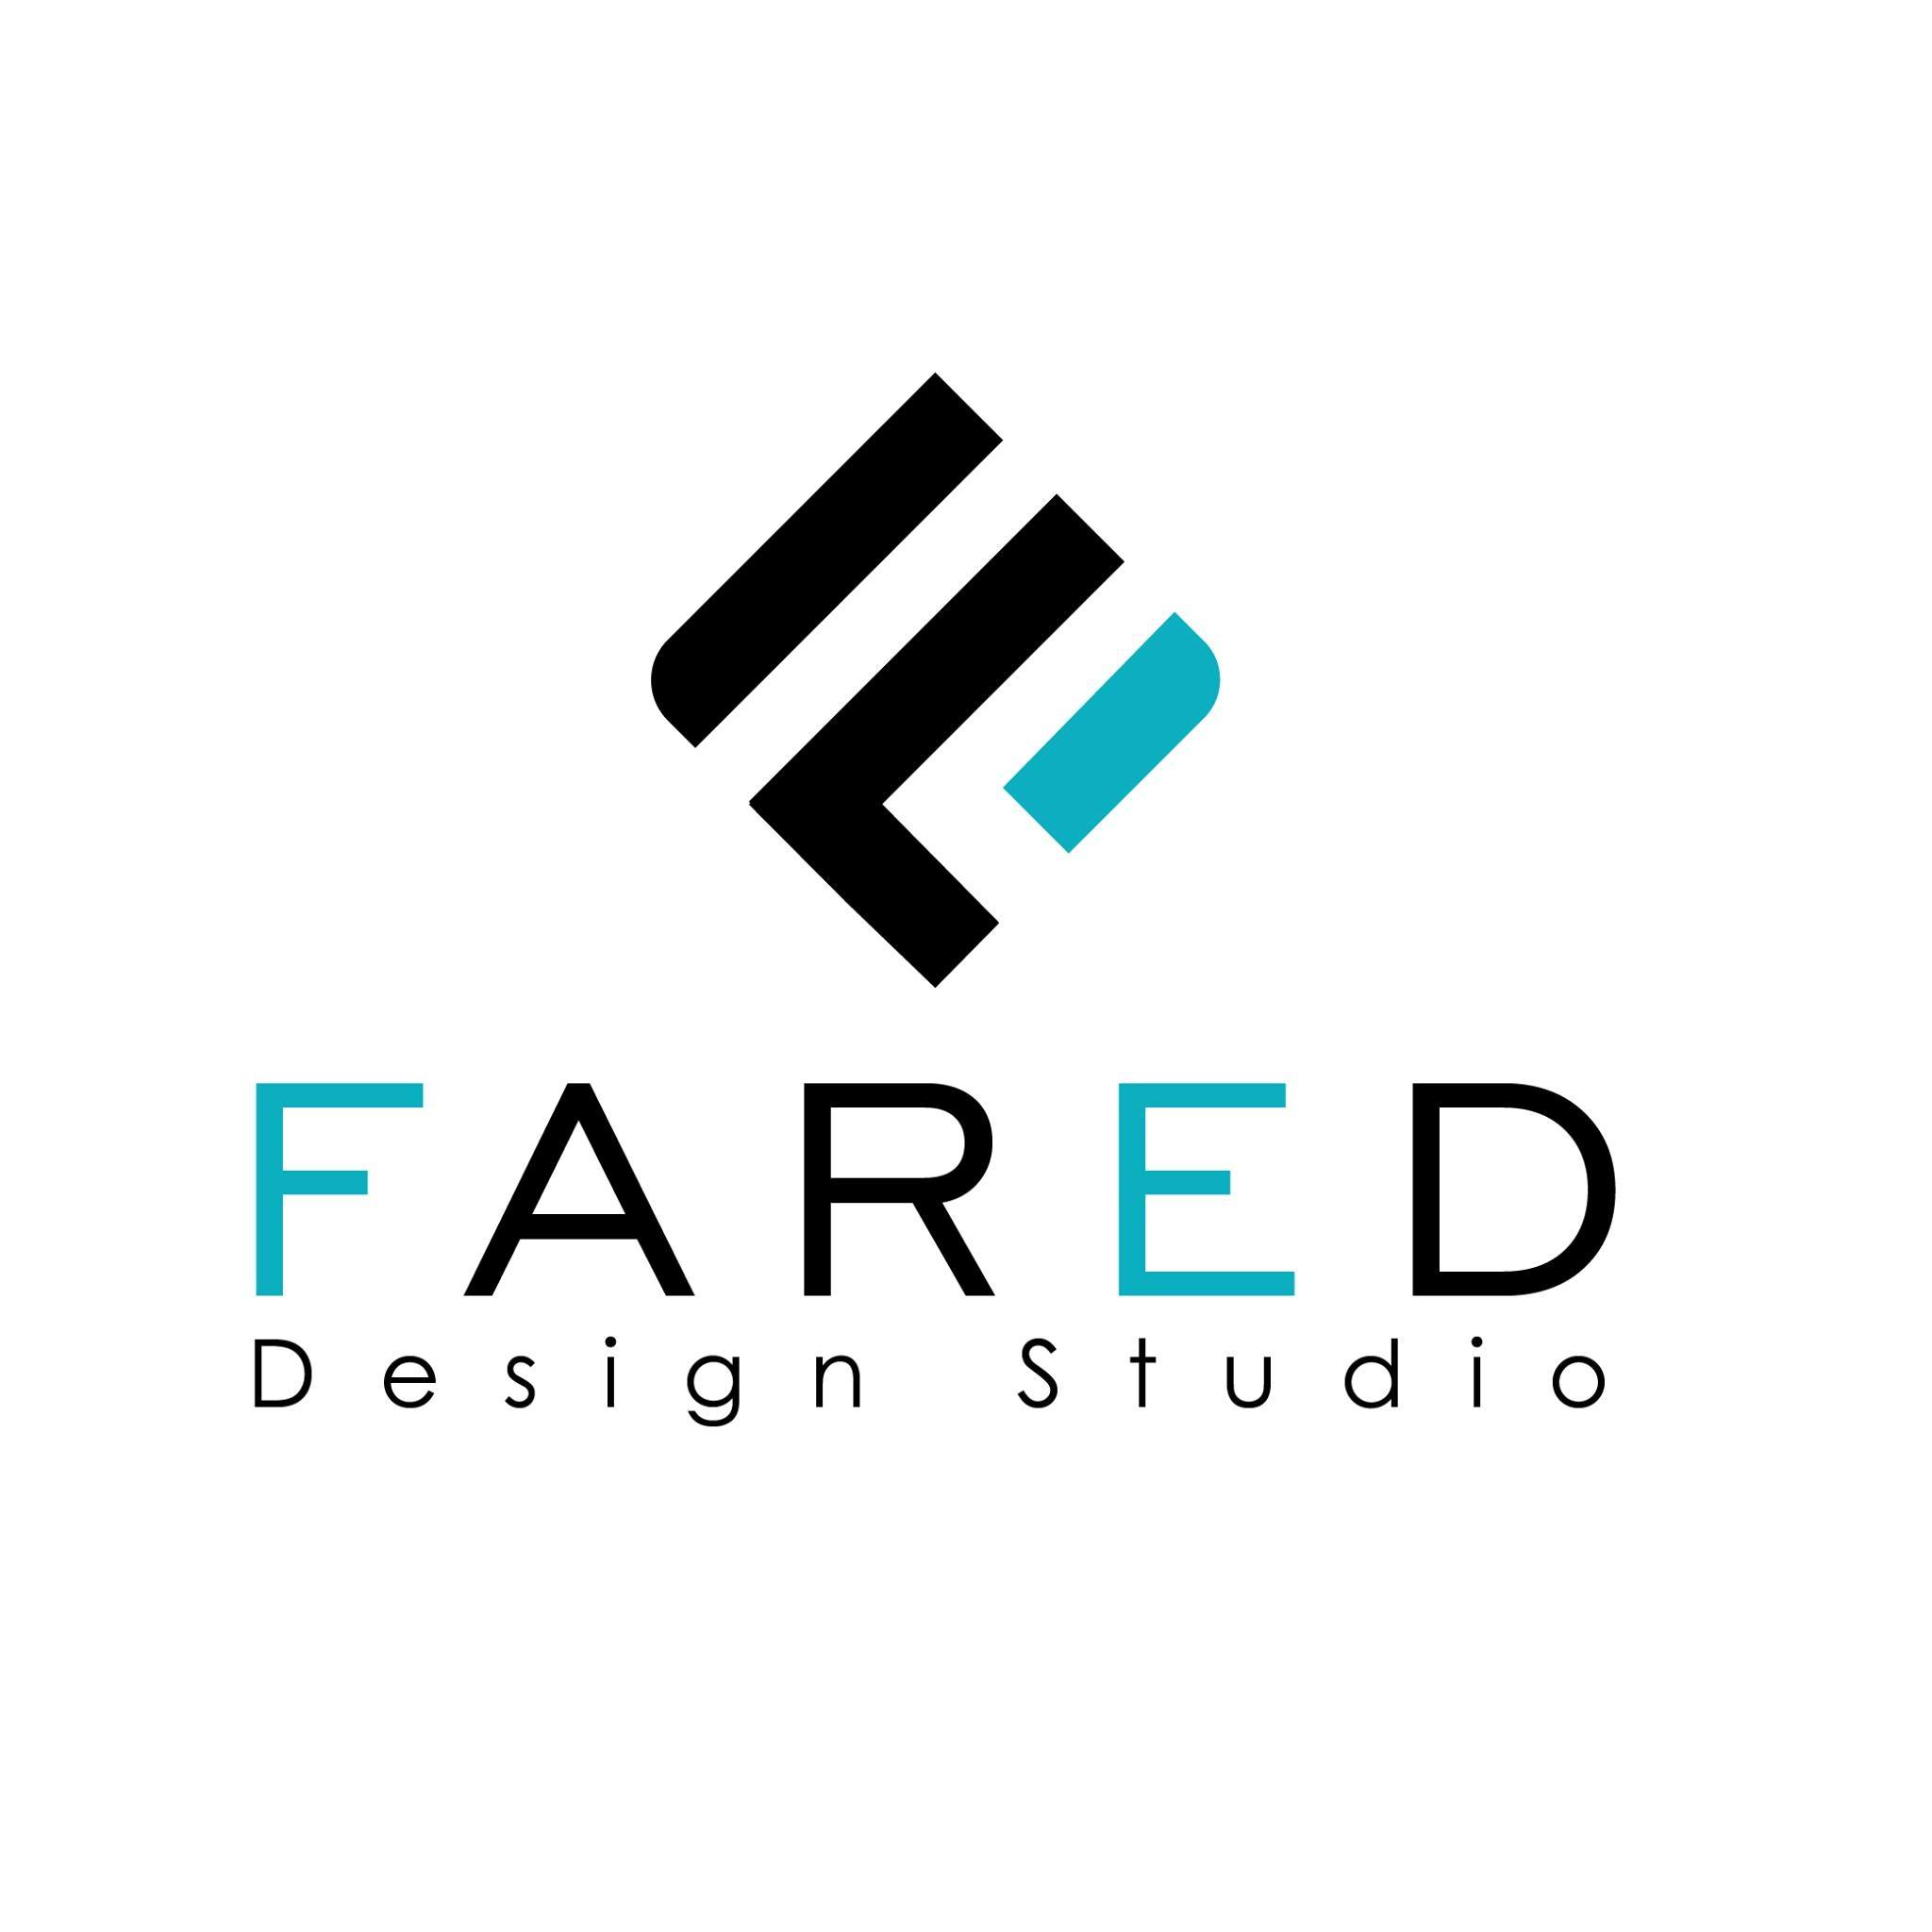 FARED DESIGN STUDIO